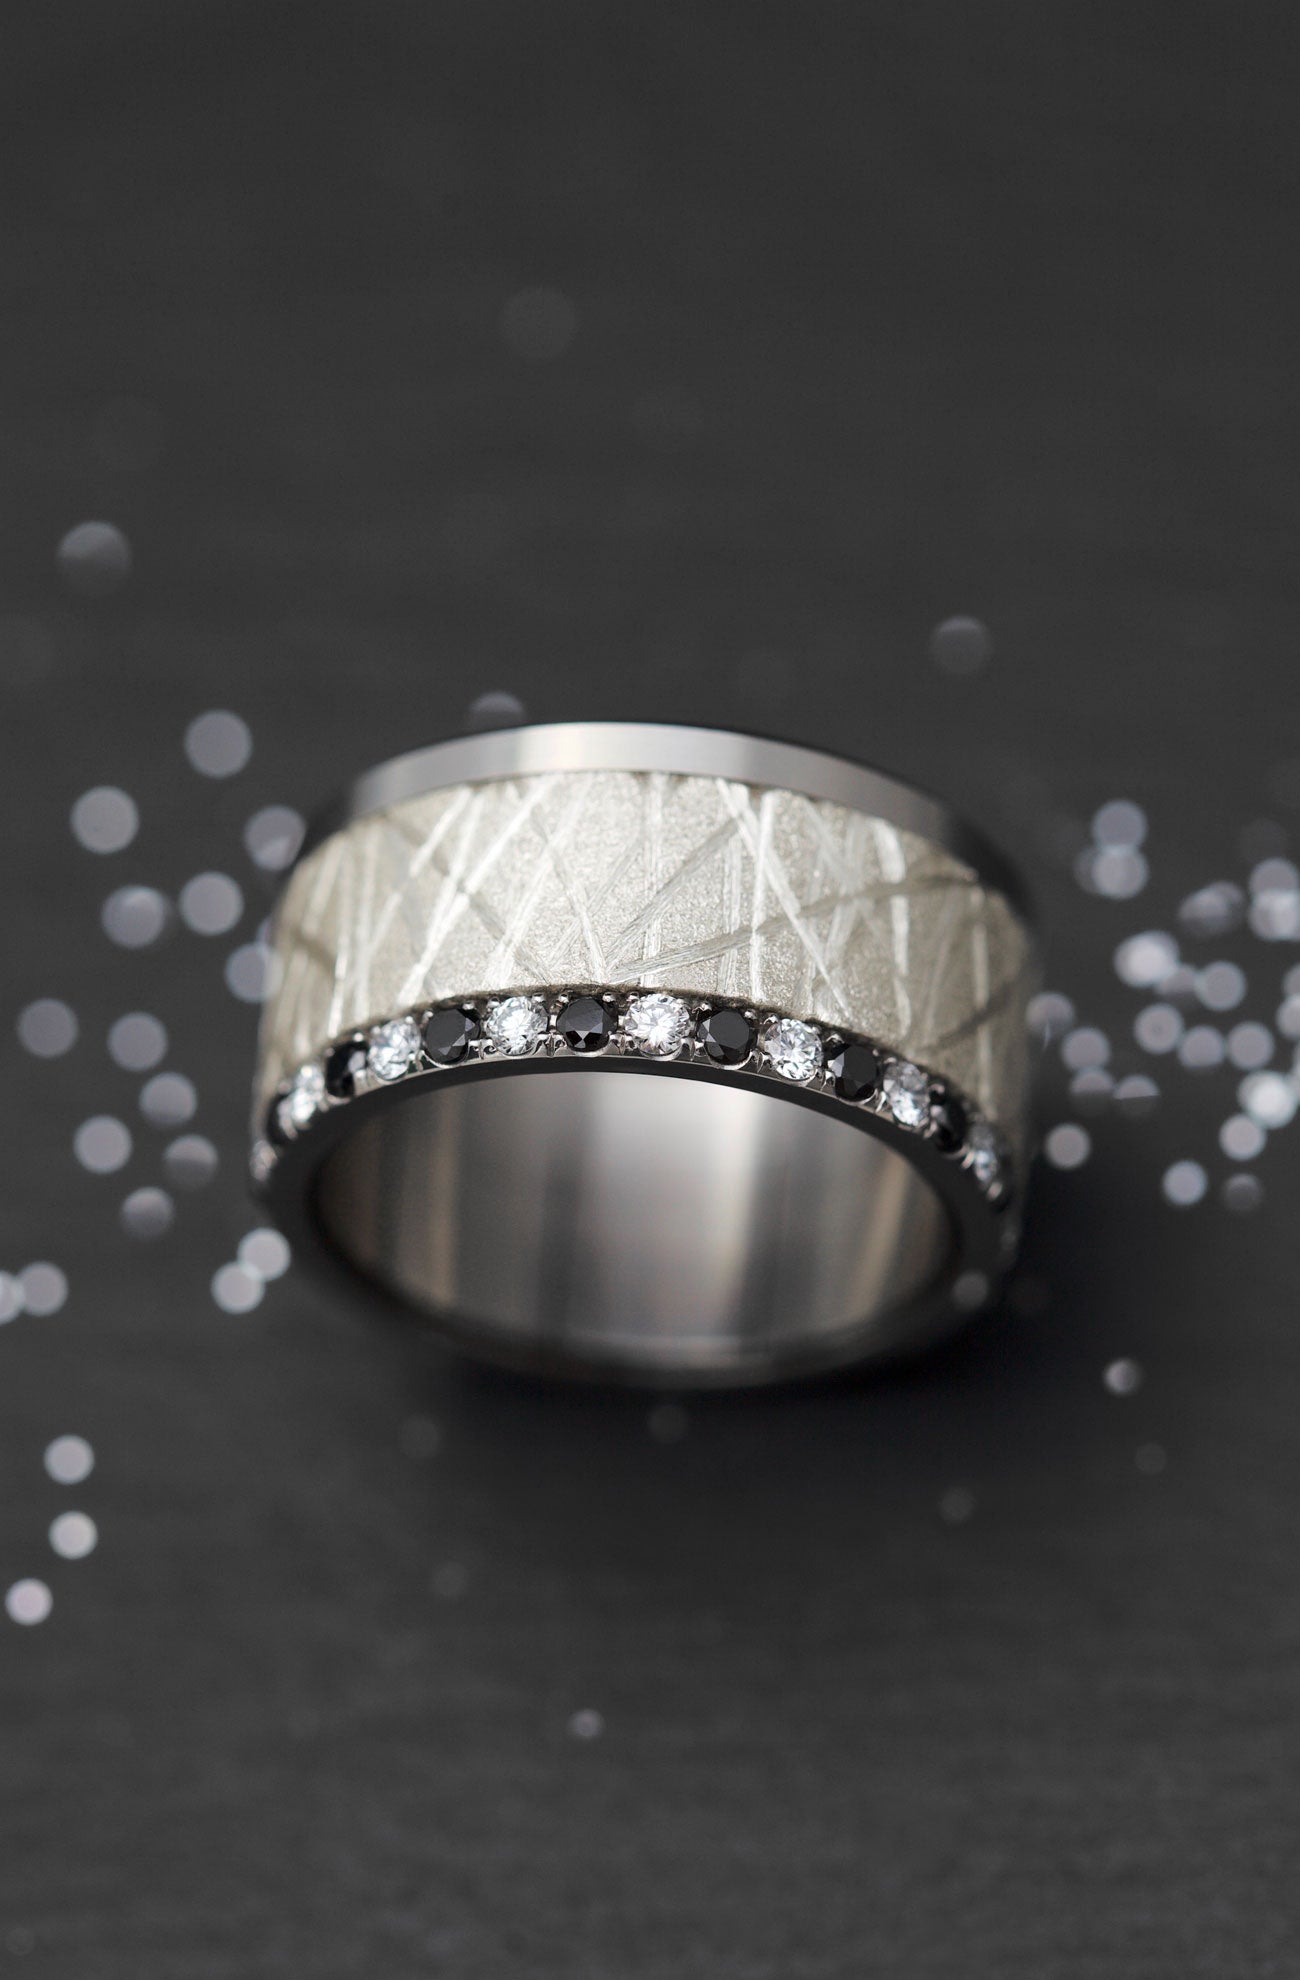 Small Fassung mit Diamanten und 1,9mm schwarzen Diamanten auf einer Seite vollständig besetzt